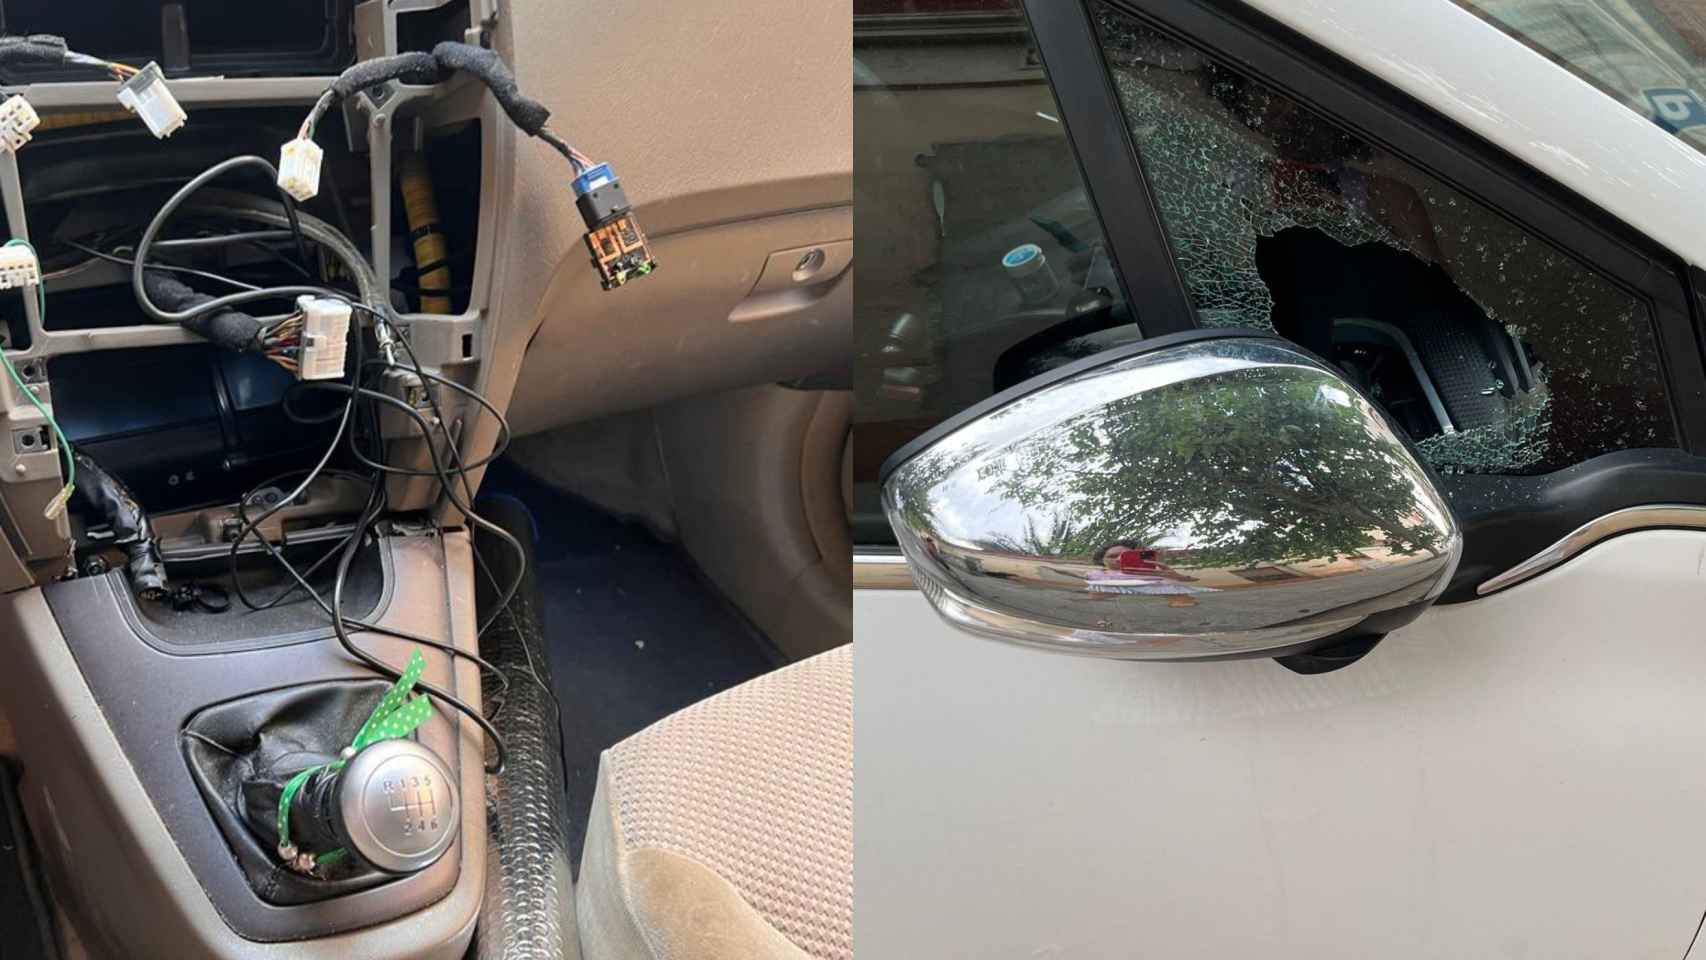 Dos coches en los que han robado en la zona de Sants-Badal / TWITTER VALENTS